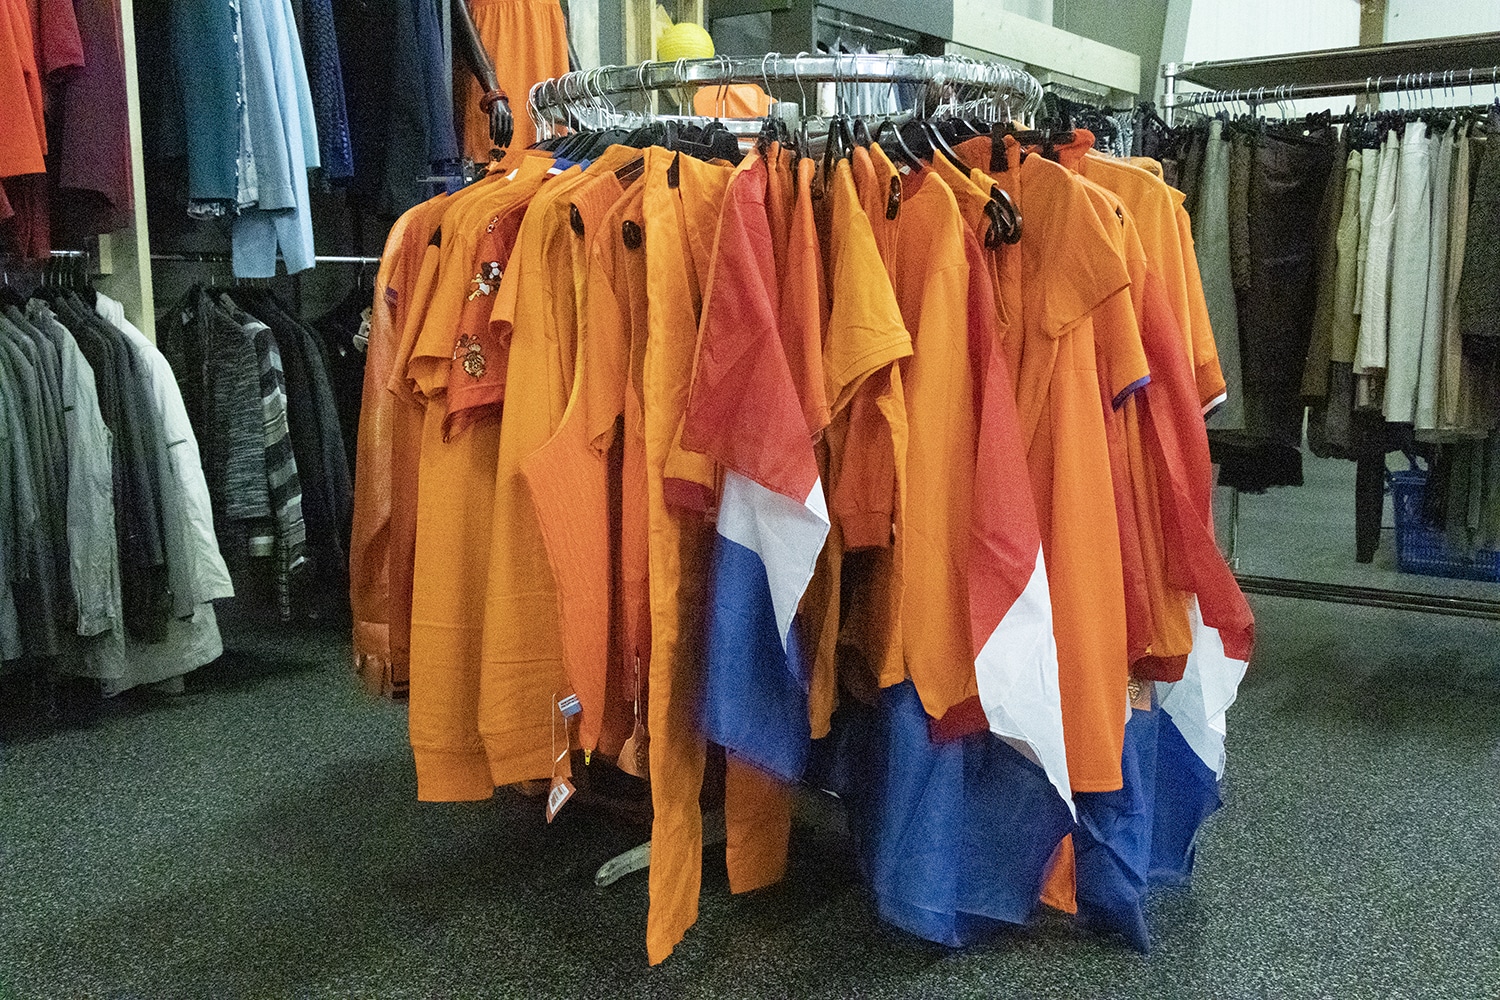 Op de foto zie je een ronde kledingrek in onze winkel. Aan dat kledingrek hangen verschillende oranjekledingstukken. Een aantal van deze kledingstukken heeft de Nederlandse vlag.